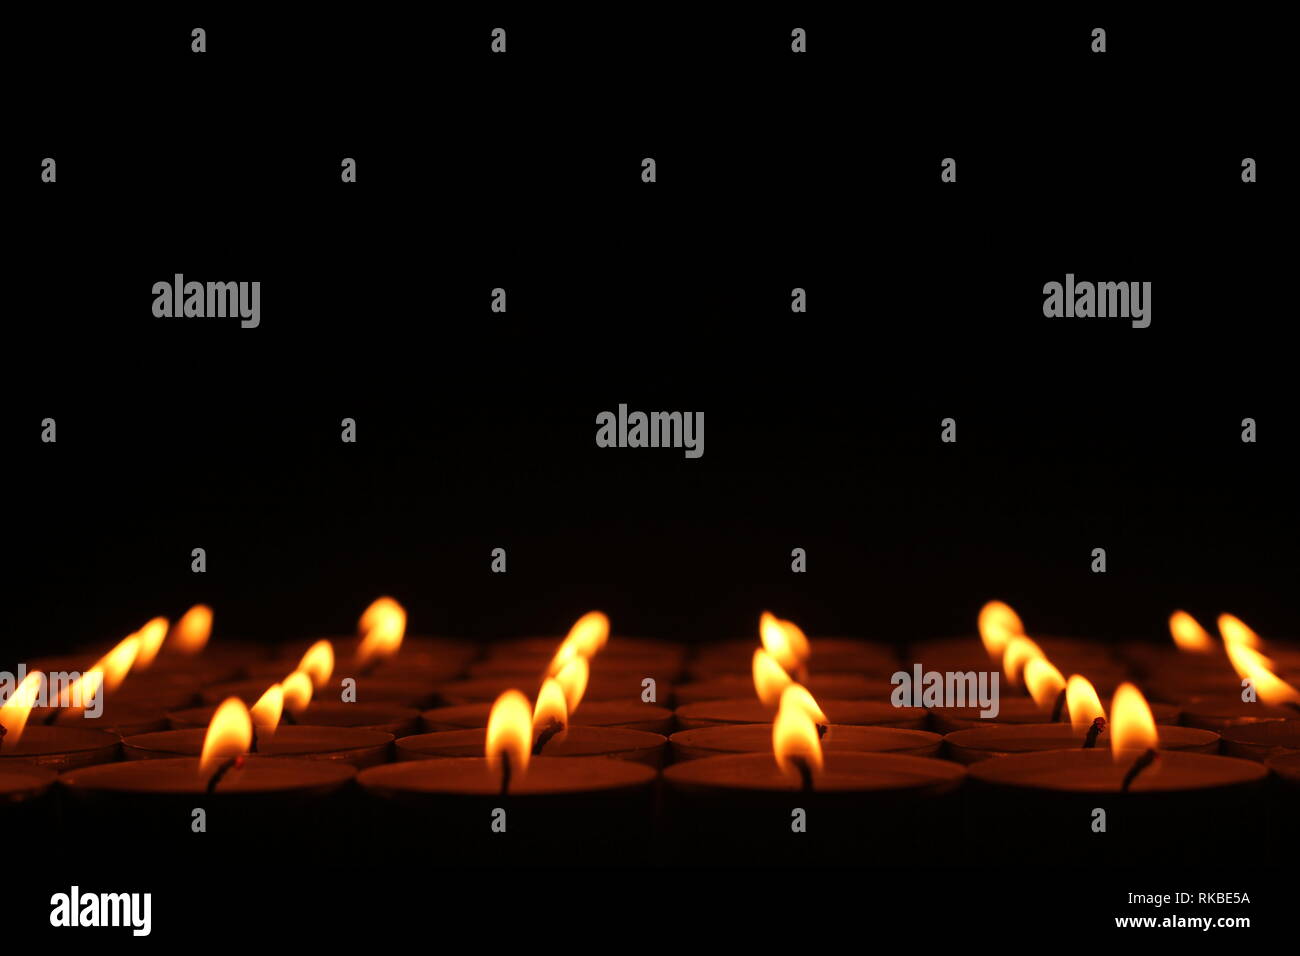 Una royalty free immagine di righe di candele che sembrano andare uno per sempre, nero con un porzione superiore. Foto Stock